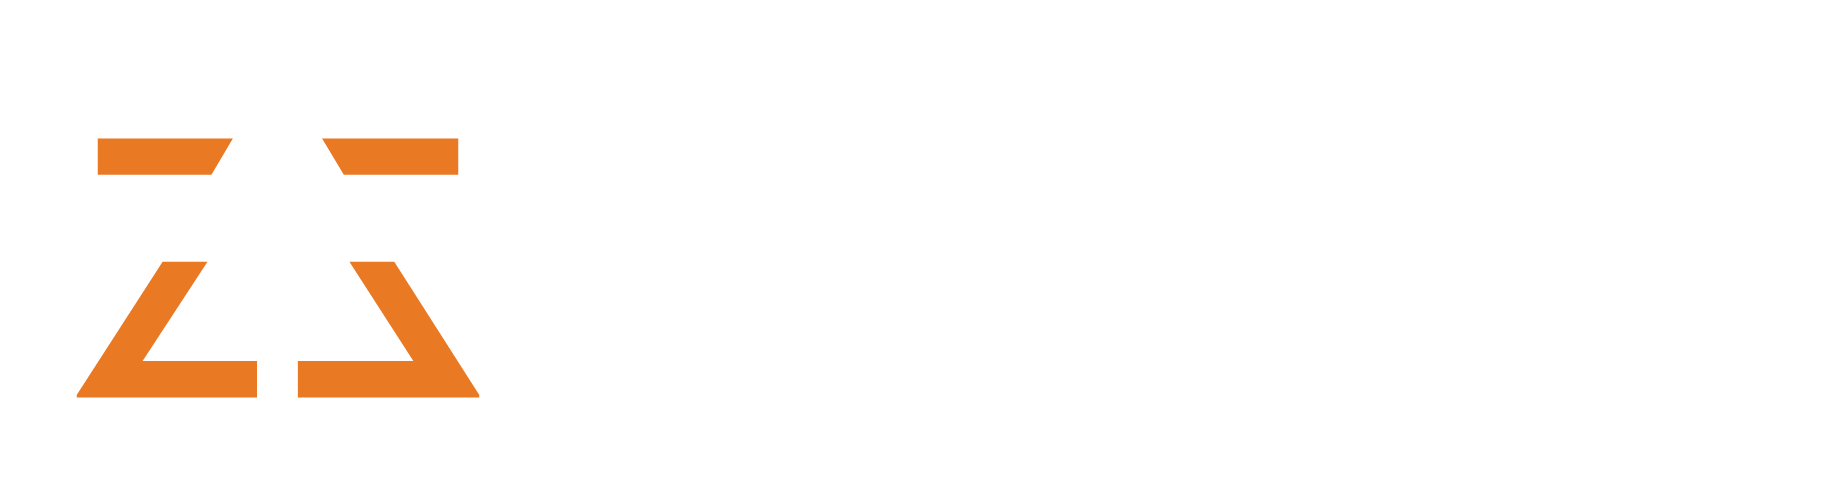 Zaibox.net